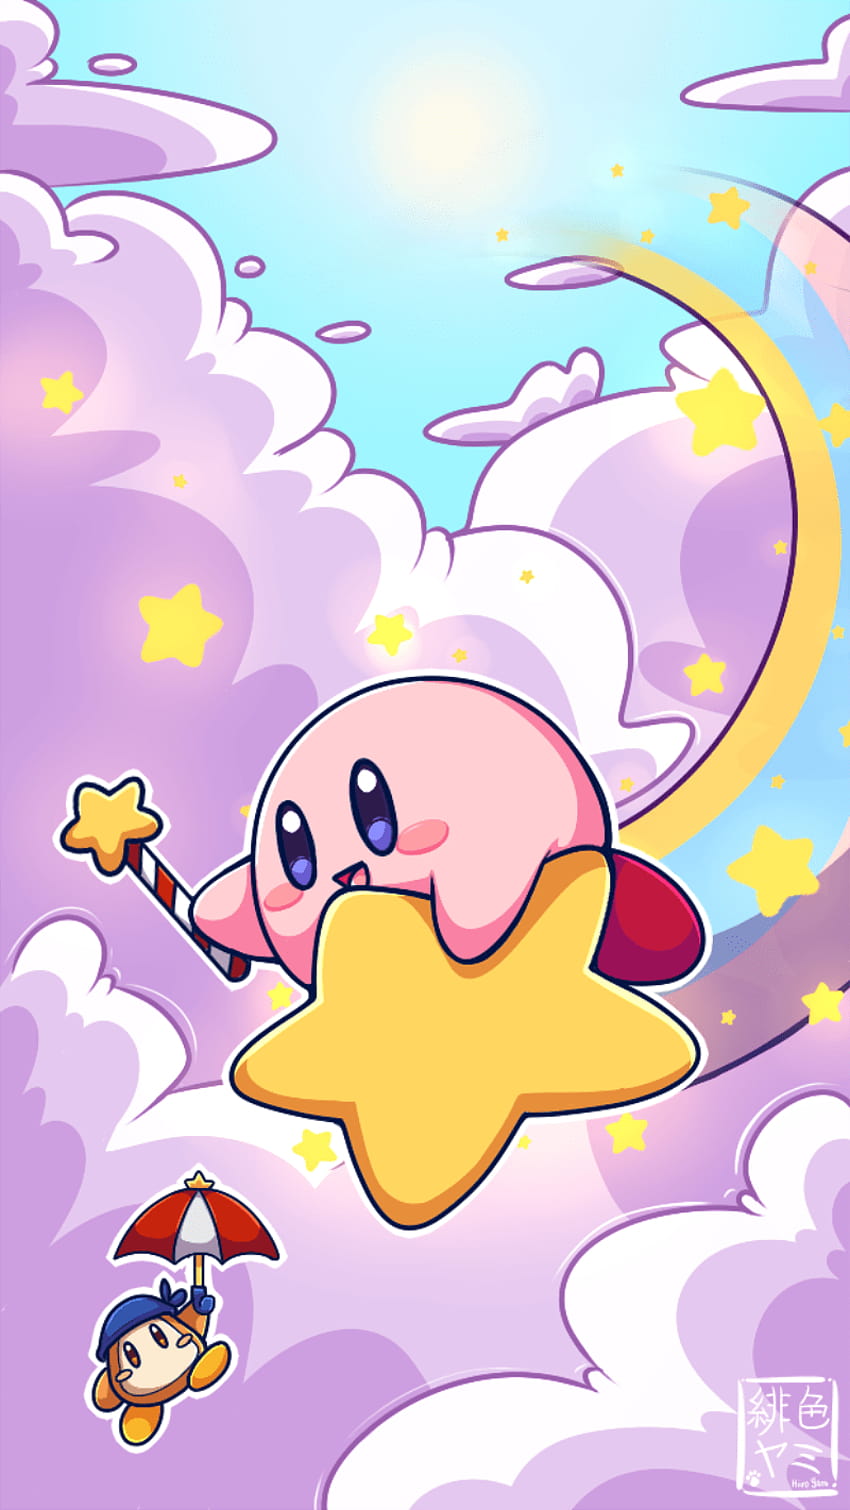 Bạn yêu thích những hình ảnh đáng yêu và ngộ nghĩnh? Những hình nền Kirby đầy chất cười và xinh xắn nhất định sẽ làm bạn phát cuồng. Cùng truy cập ngay để tận hưởng kho ảnh đa dạng về chú nhắm Kirby nào!